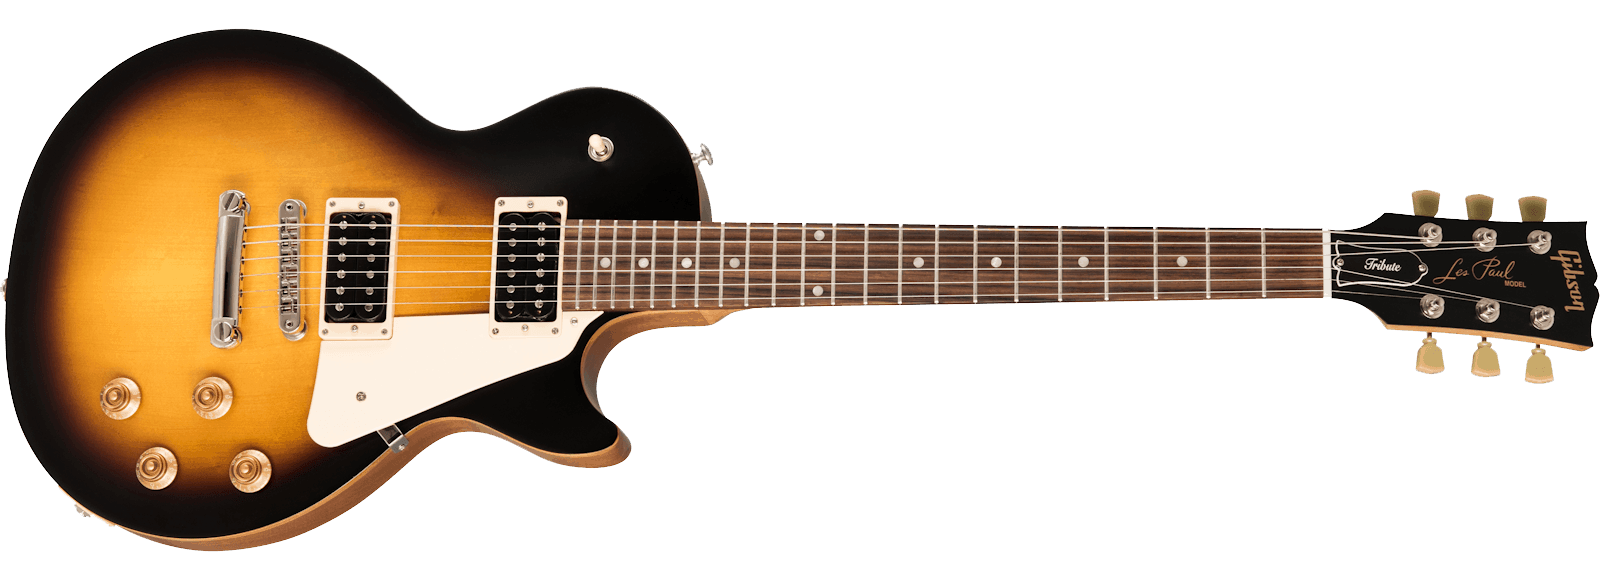 L’emblématique Gibson Les Paul - souvent disponible chez Harry Guitars